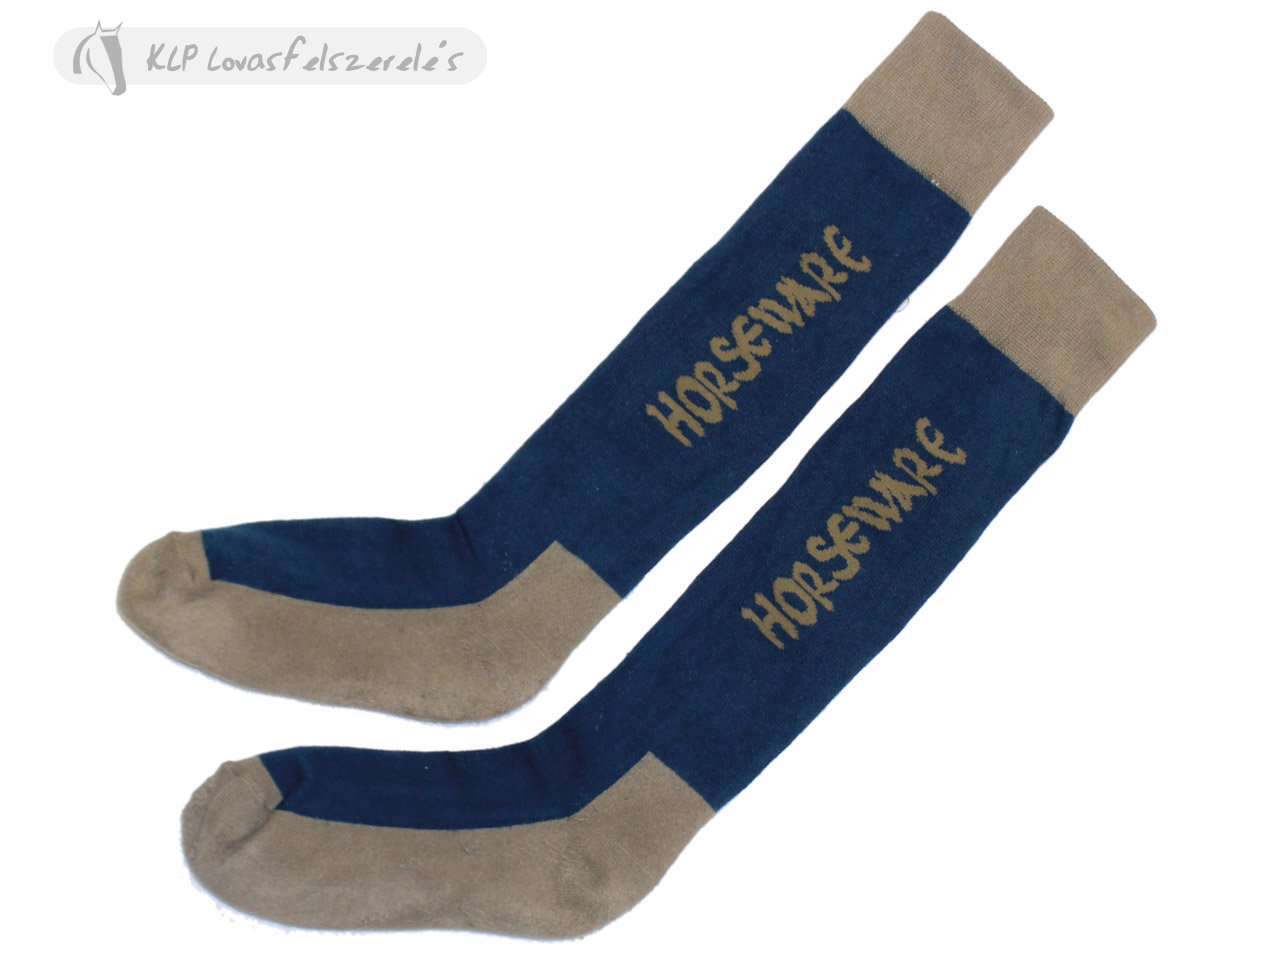 Winter Socks Horseware (2 Pack)